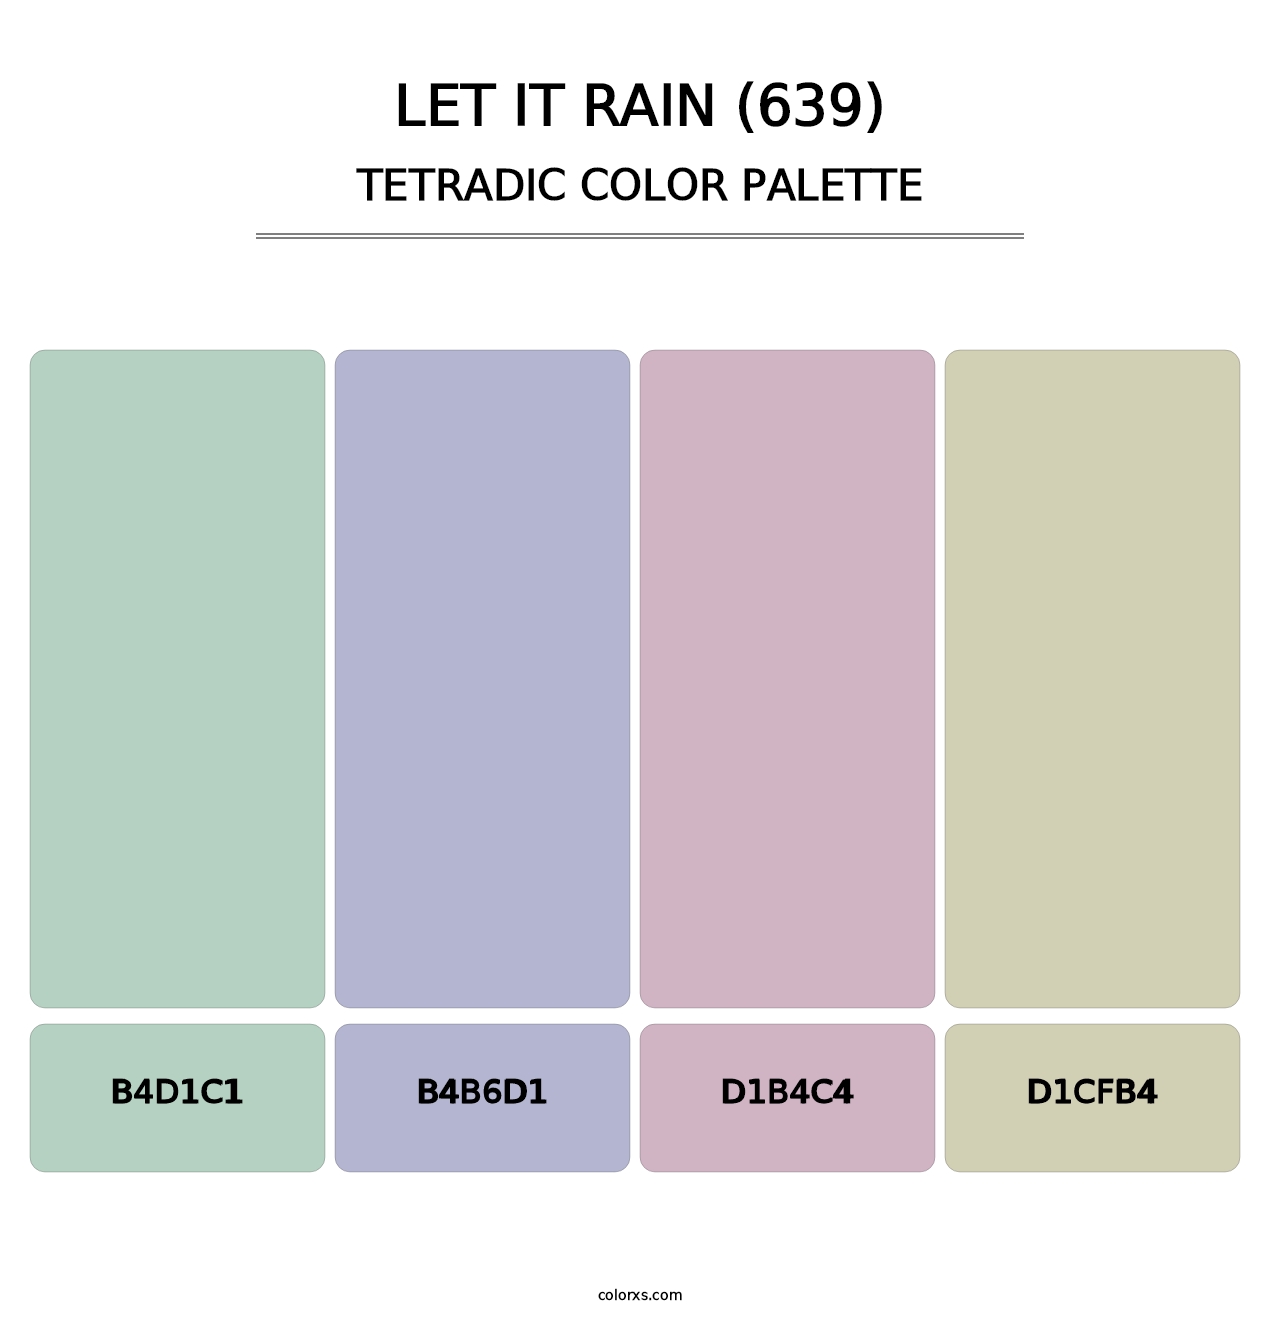 Let It Rain (639) - Tetradic Color Palette